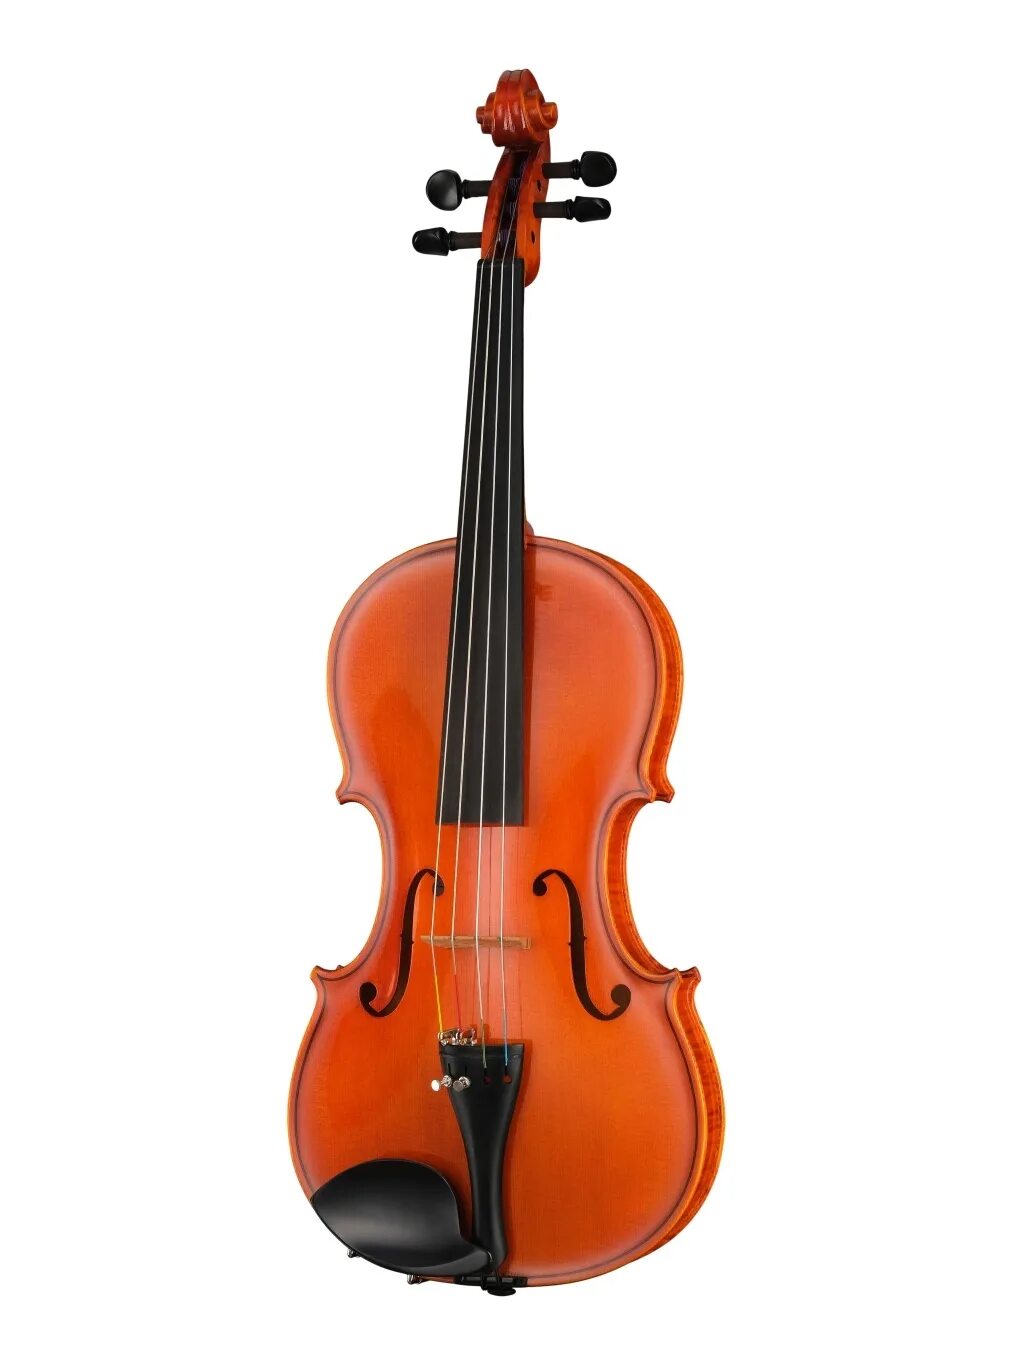 В музыкальном магазине продают скрипки и гитары. Скрипка Euphony 4/4. Euphony скрипка. Cremona 920 скрипка 3/4. Euphony скрипка производитель.